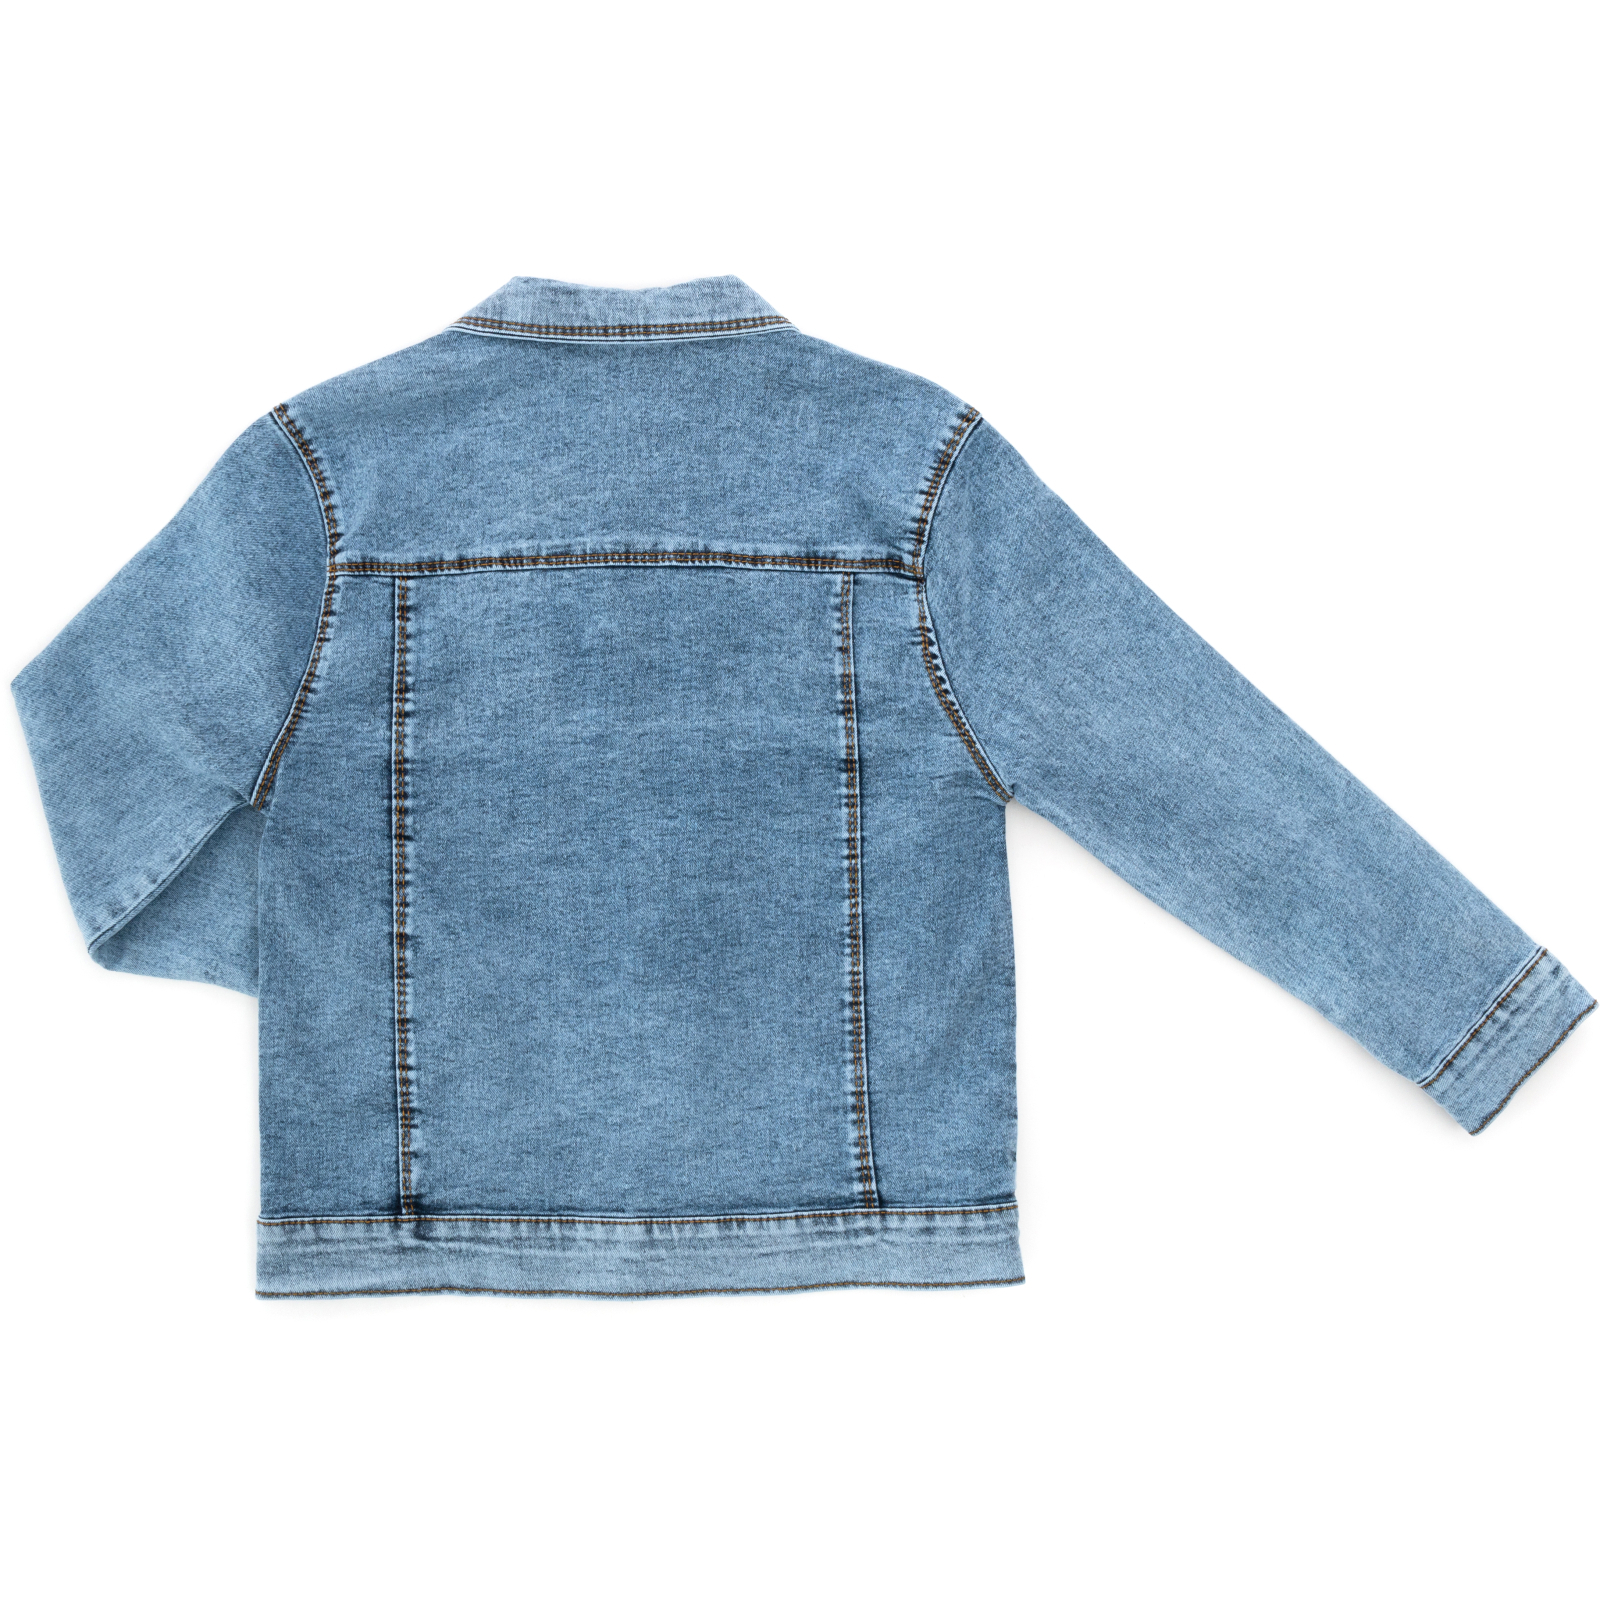 Пиджак Sercino джинсовый (99723-146B-blue) изображение 2